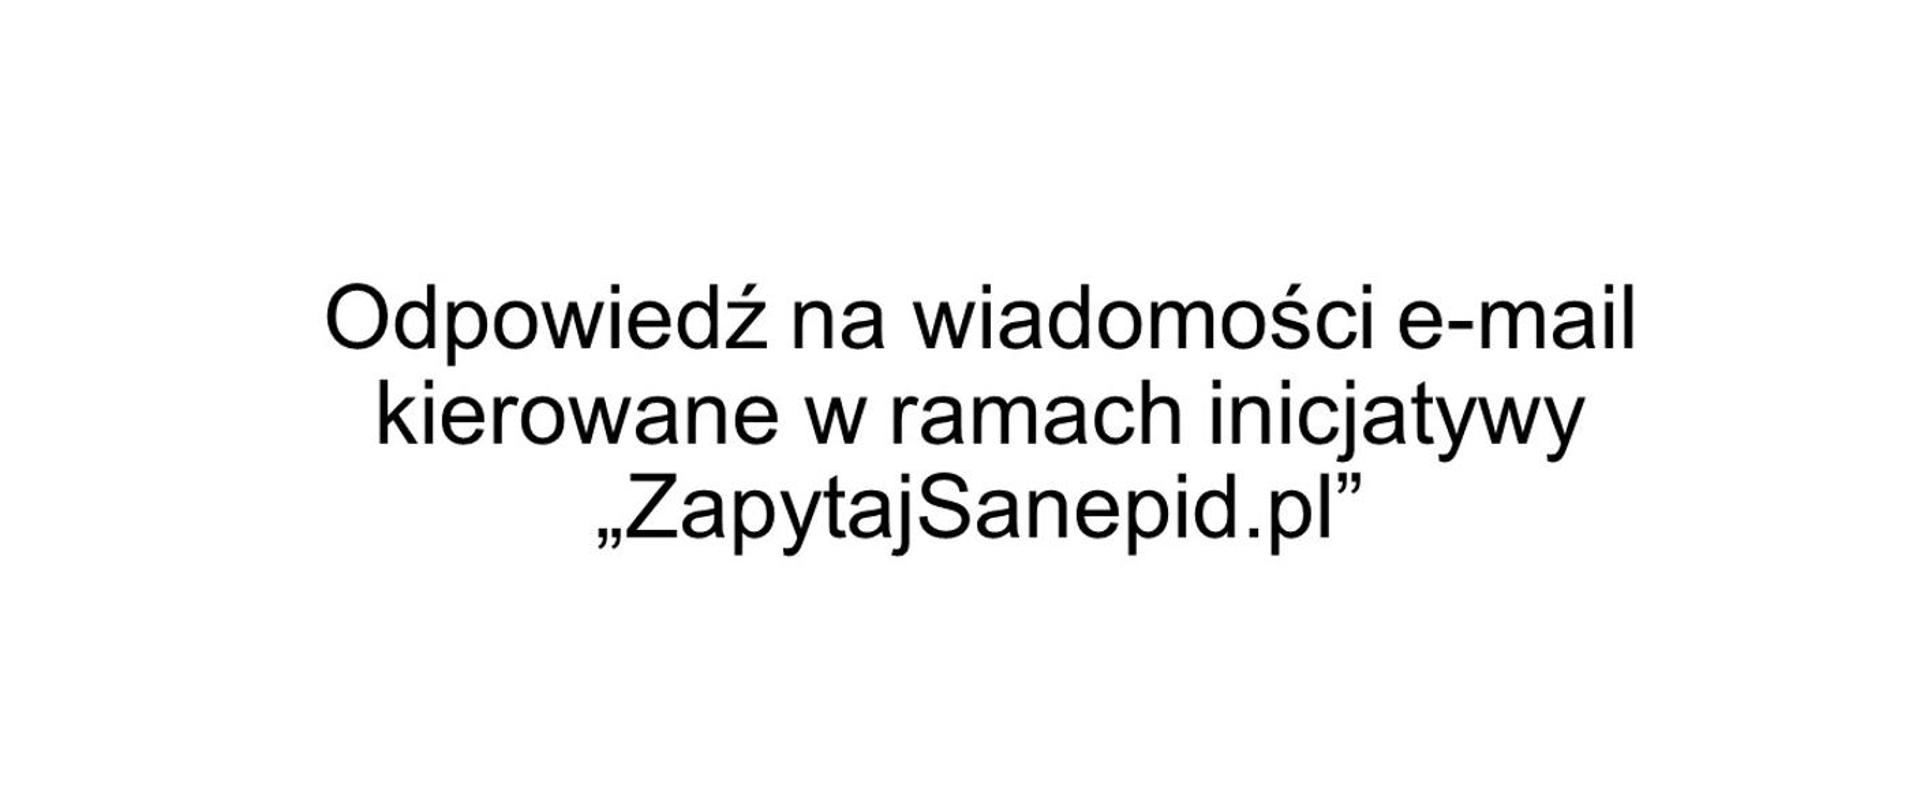 Grafika z informacją "Odpowiedź na wiadomości e-mail kierowane w ramach inicjatywy "ZapytajSanepid.pl"